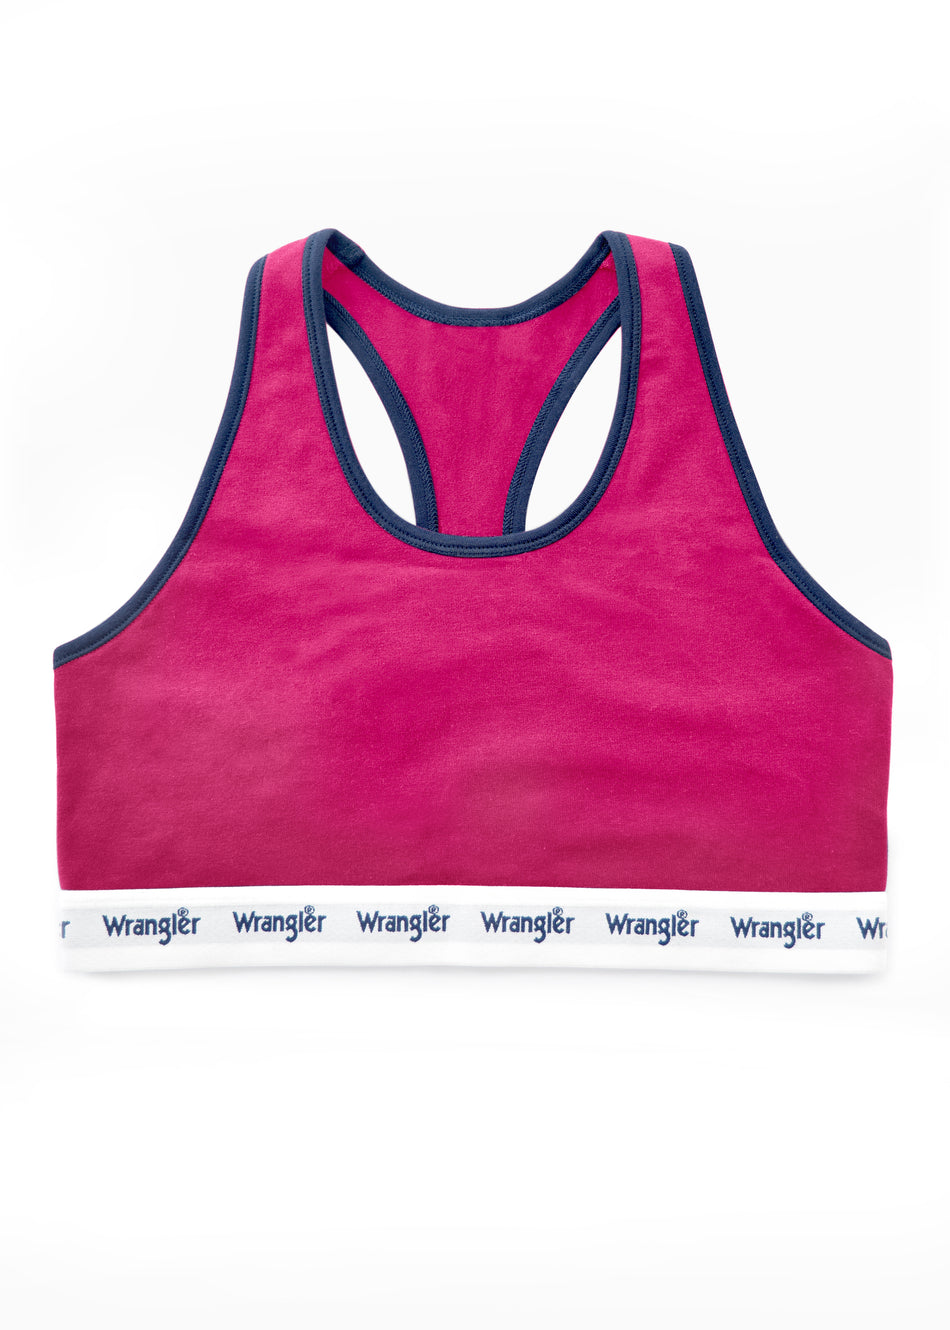 Wrangler - Ladies Crop Top in Pink